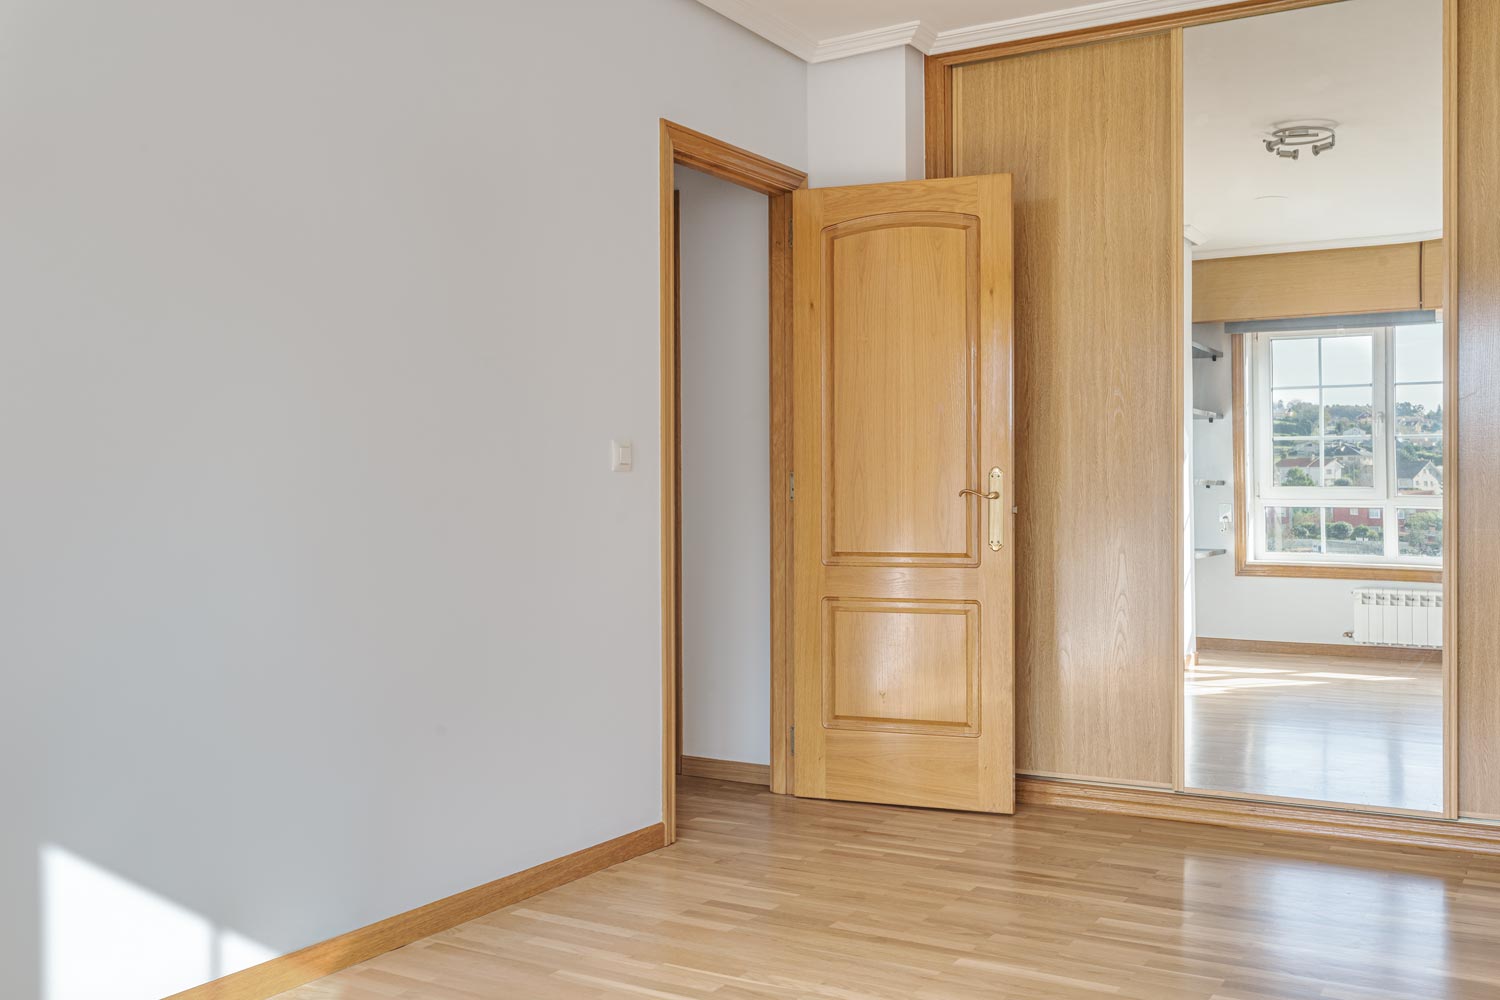 Vista de una habitación vacía con suelo de parqué claro y una puerta abierta de madera que muestra otra habitación iluminada con luz natural